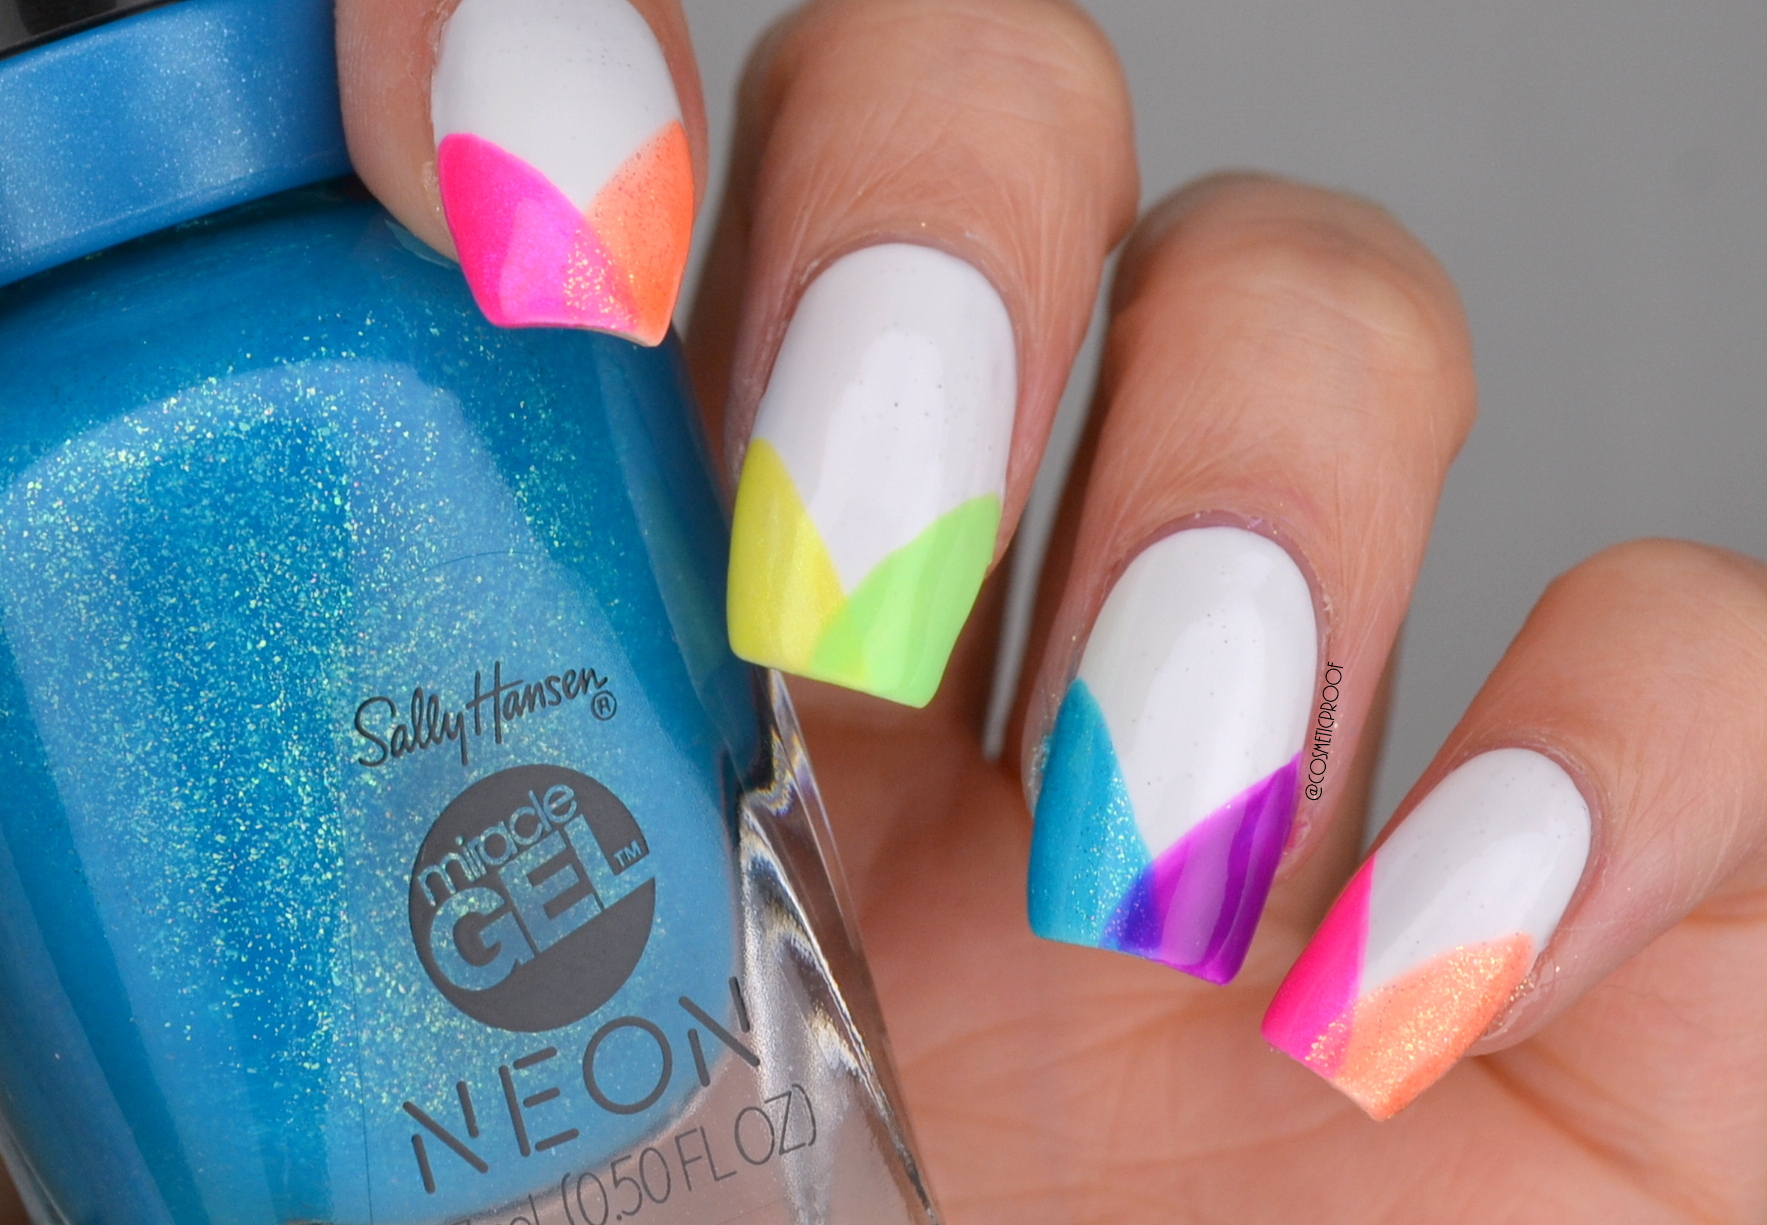 Neon Bright Nail Art Design - wide 3